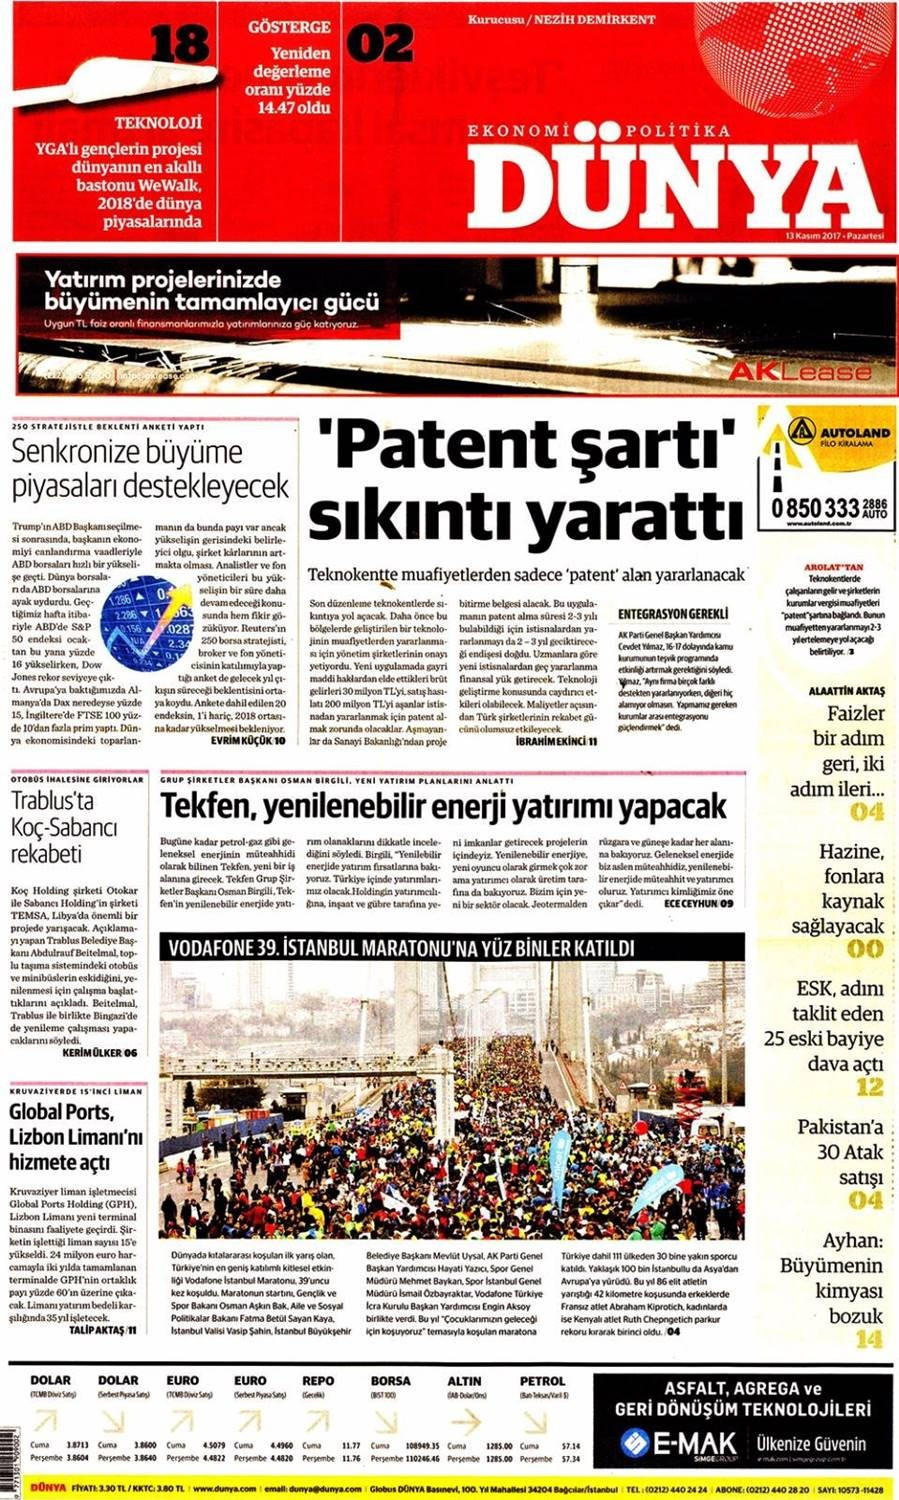 Günün gazete manşetleri (13 Kasım 2017) - Sayfa 1